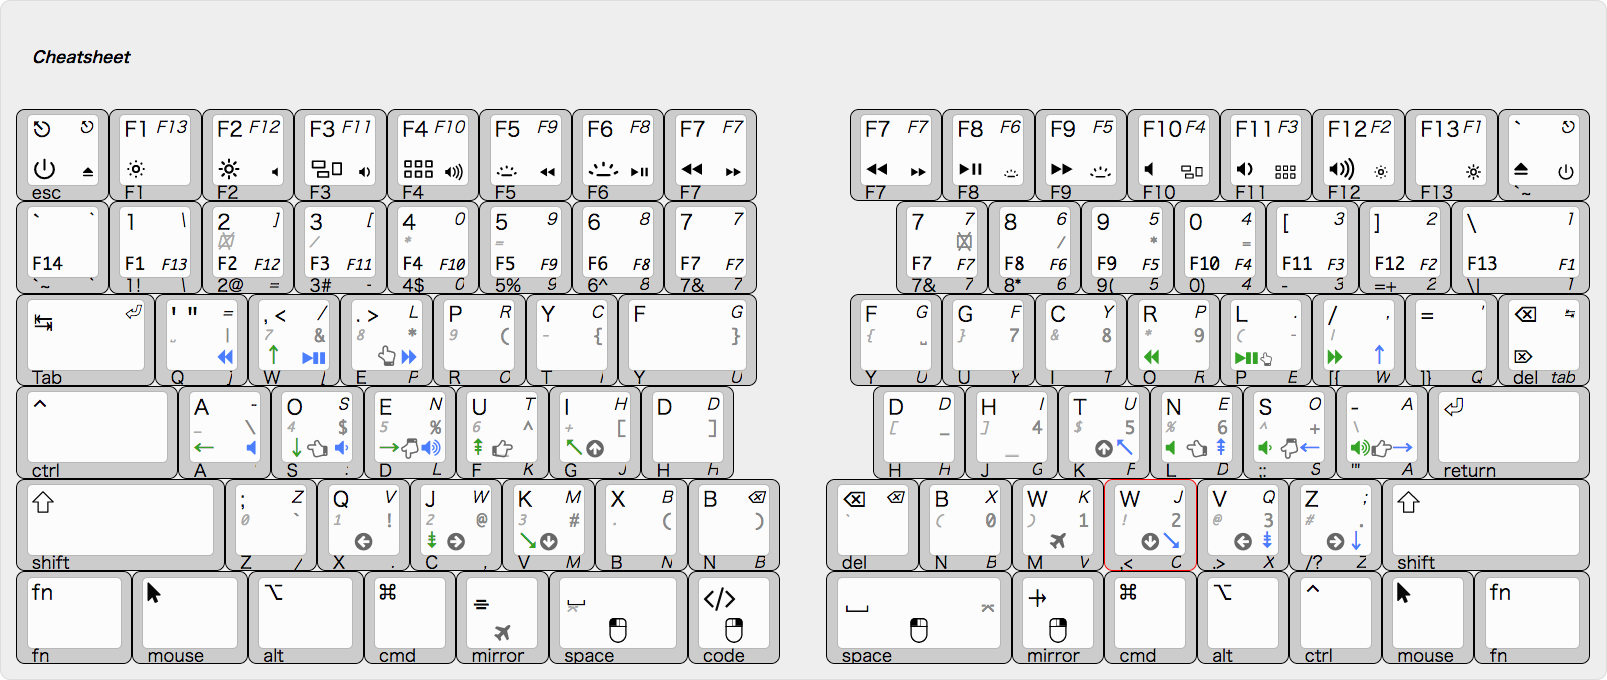 keyboard-layout (LY092-MINI) Cheatsheet.png